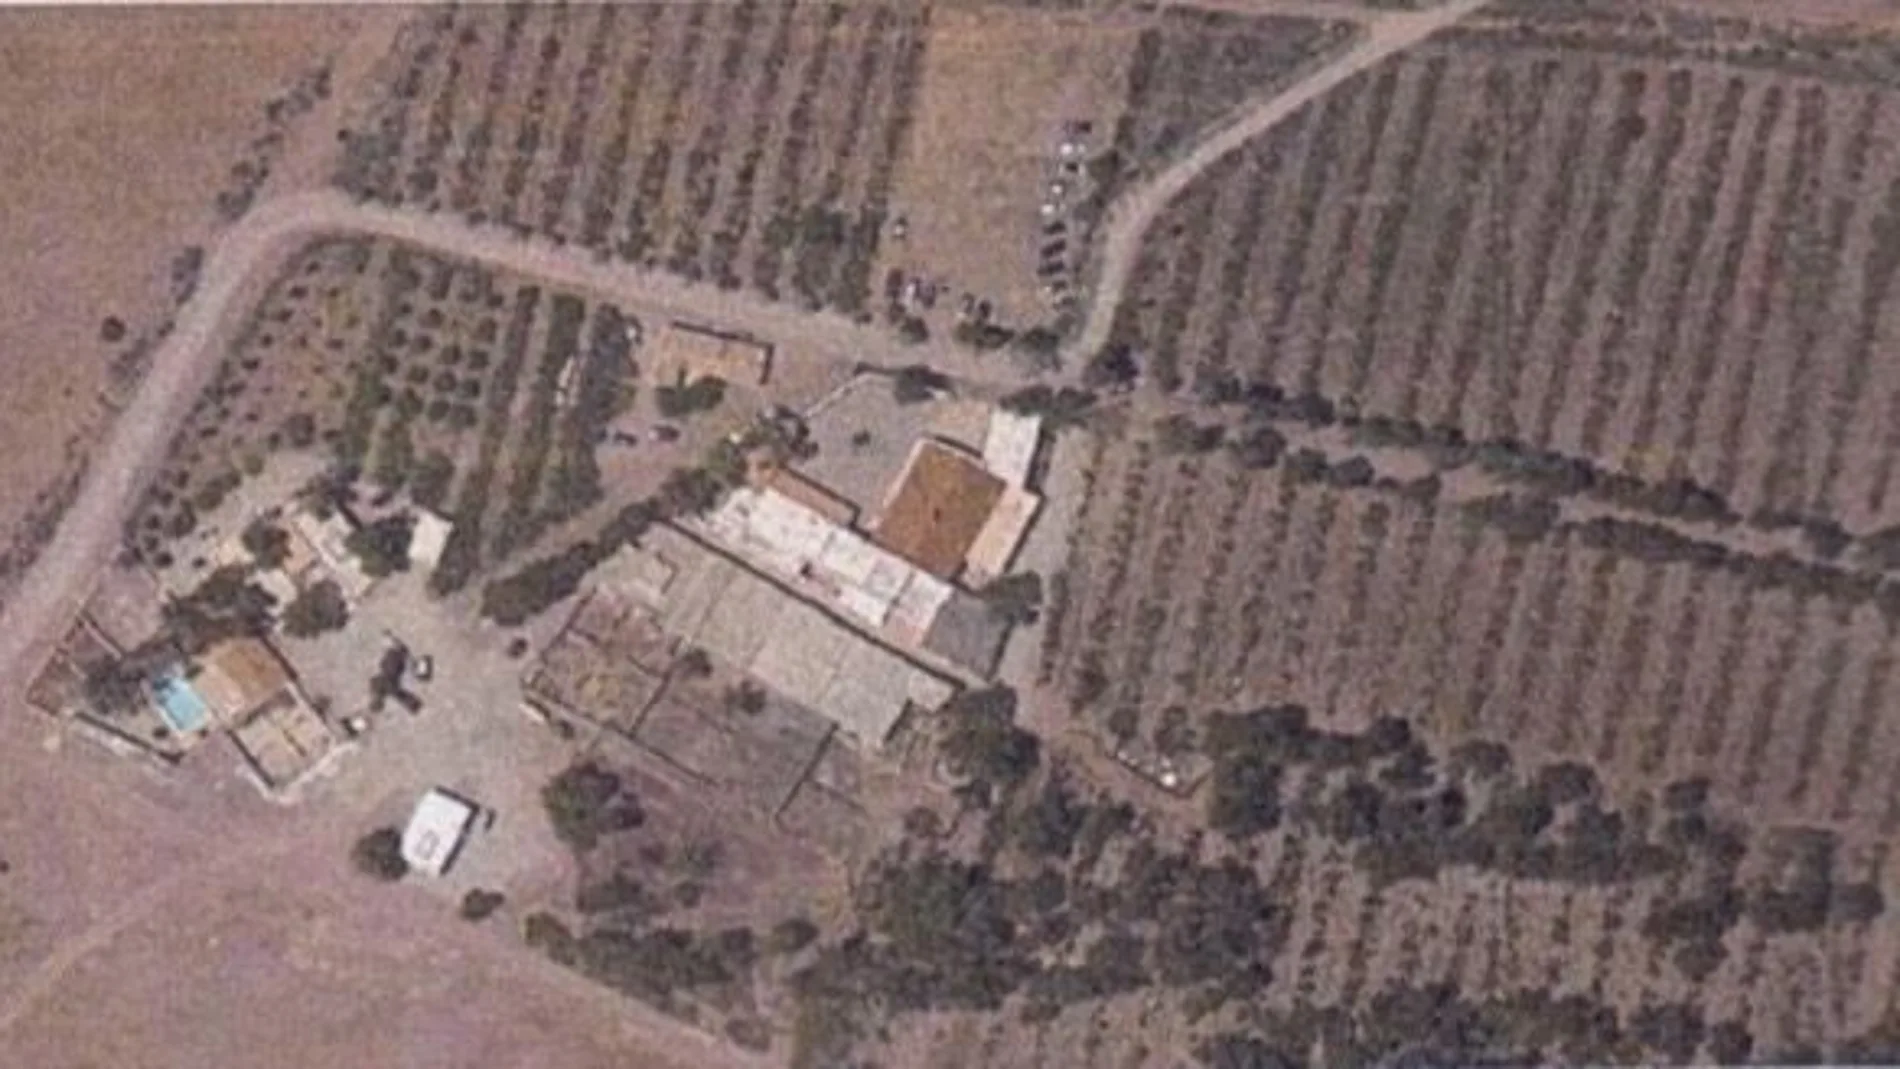 Vista del área del cortijo al que se quiere dar uso turístico situado en el término municipal de Níjar, en Almería